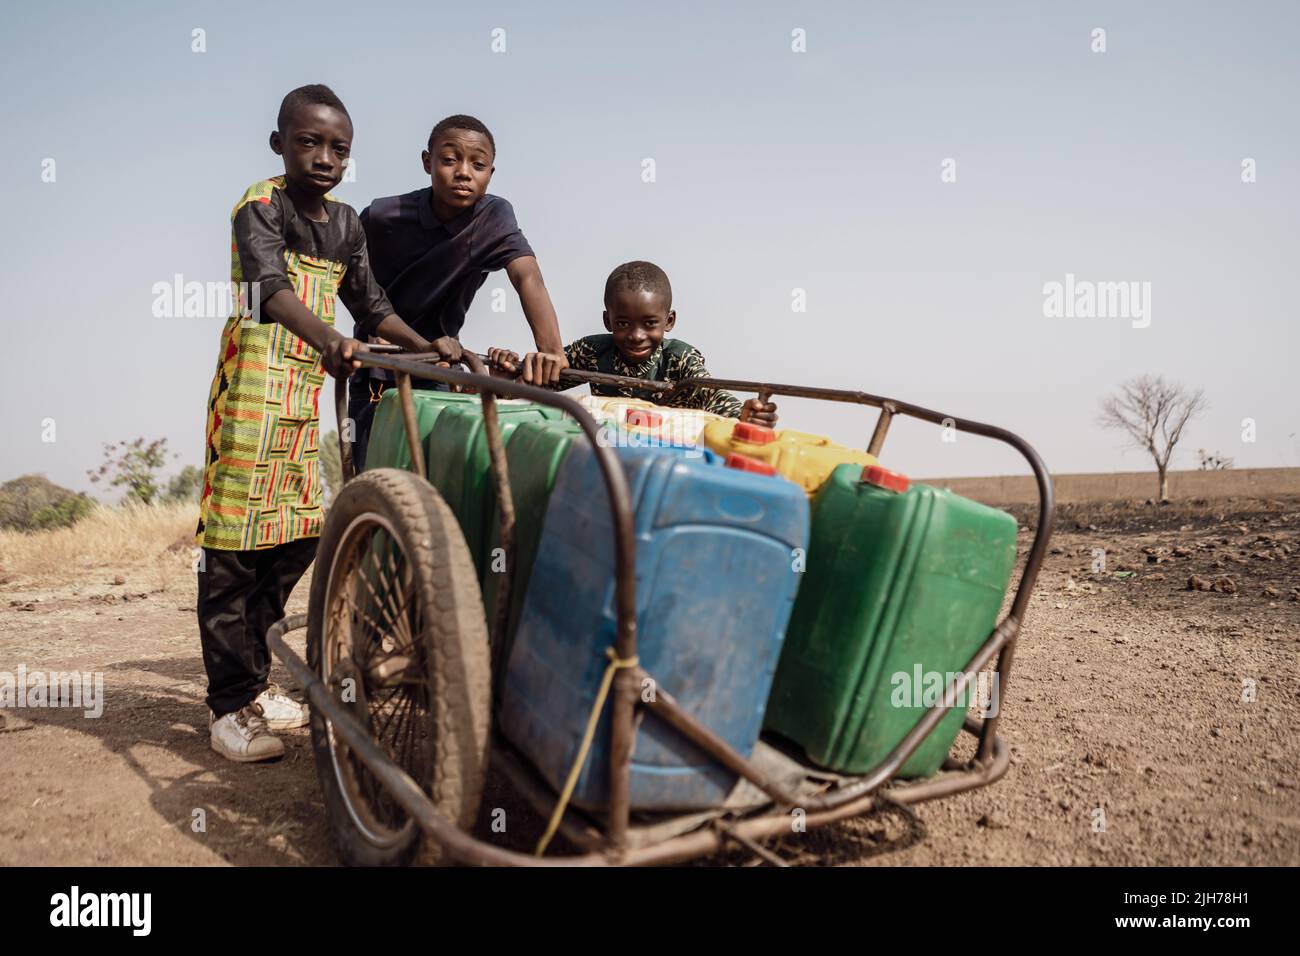 Groupe de jeunes garçons africains poussant un chariot lourd plein de bidons d'eau; manque d'approvisionnement en eau domestique dans les pays en développement Banque D'Images